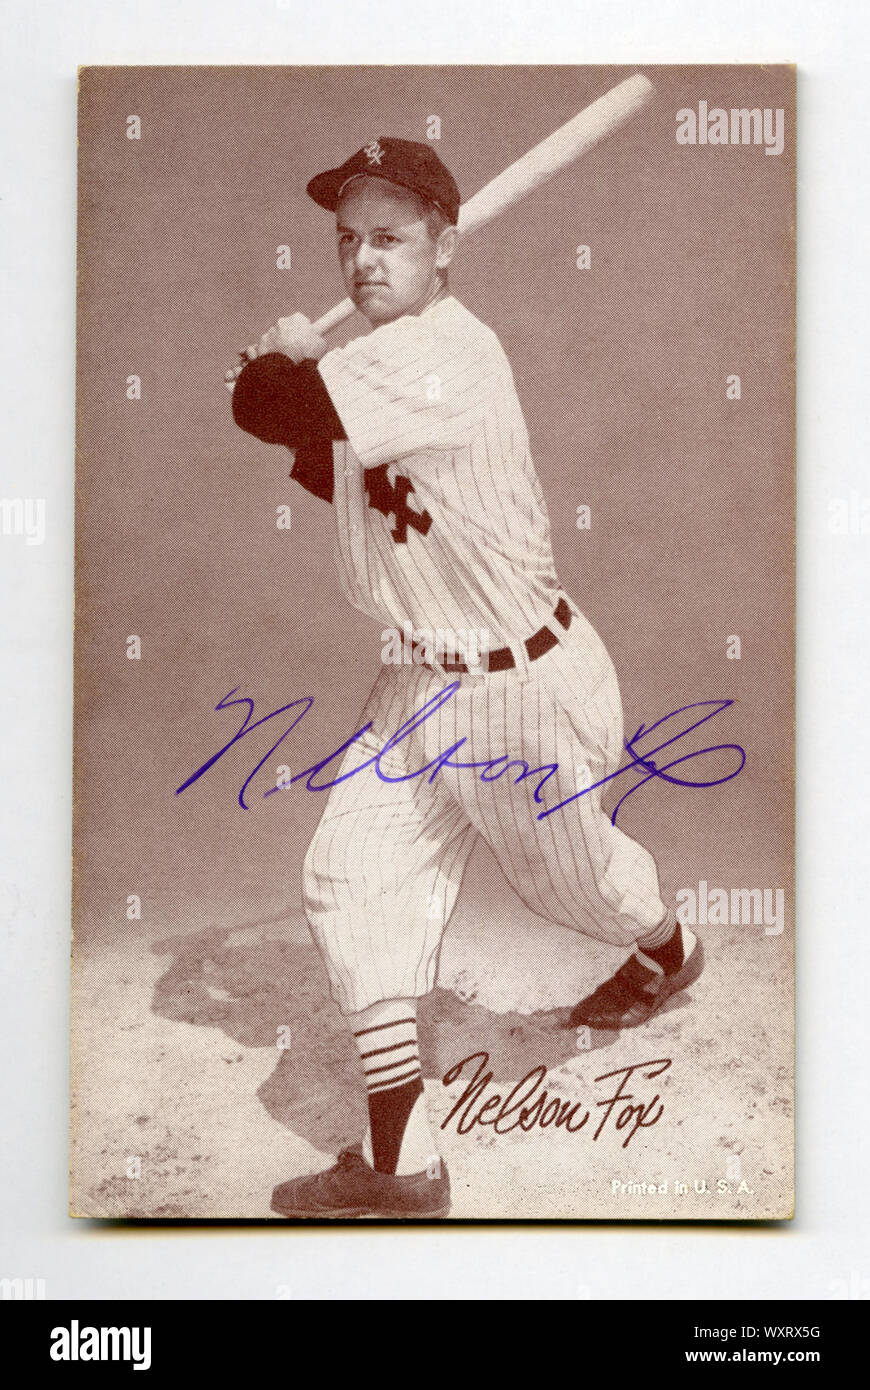 Firmato degli anni cinquanta era scheda di baseball della Hall of fame giocatore Nellie Fox con la Chicago White Sox di American League. Foto Stock